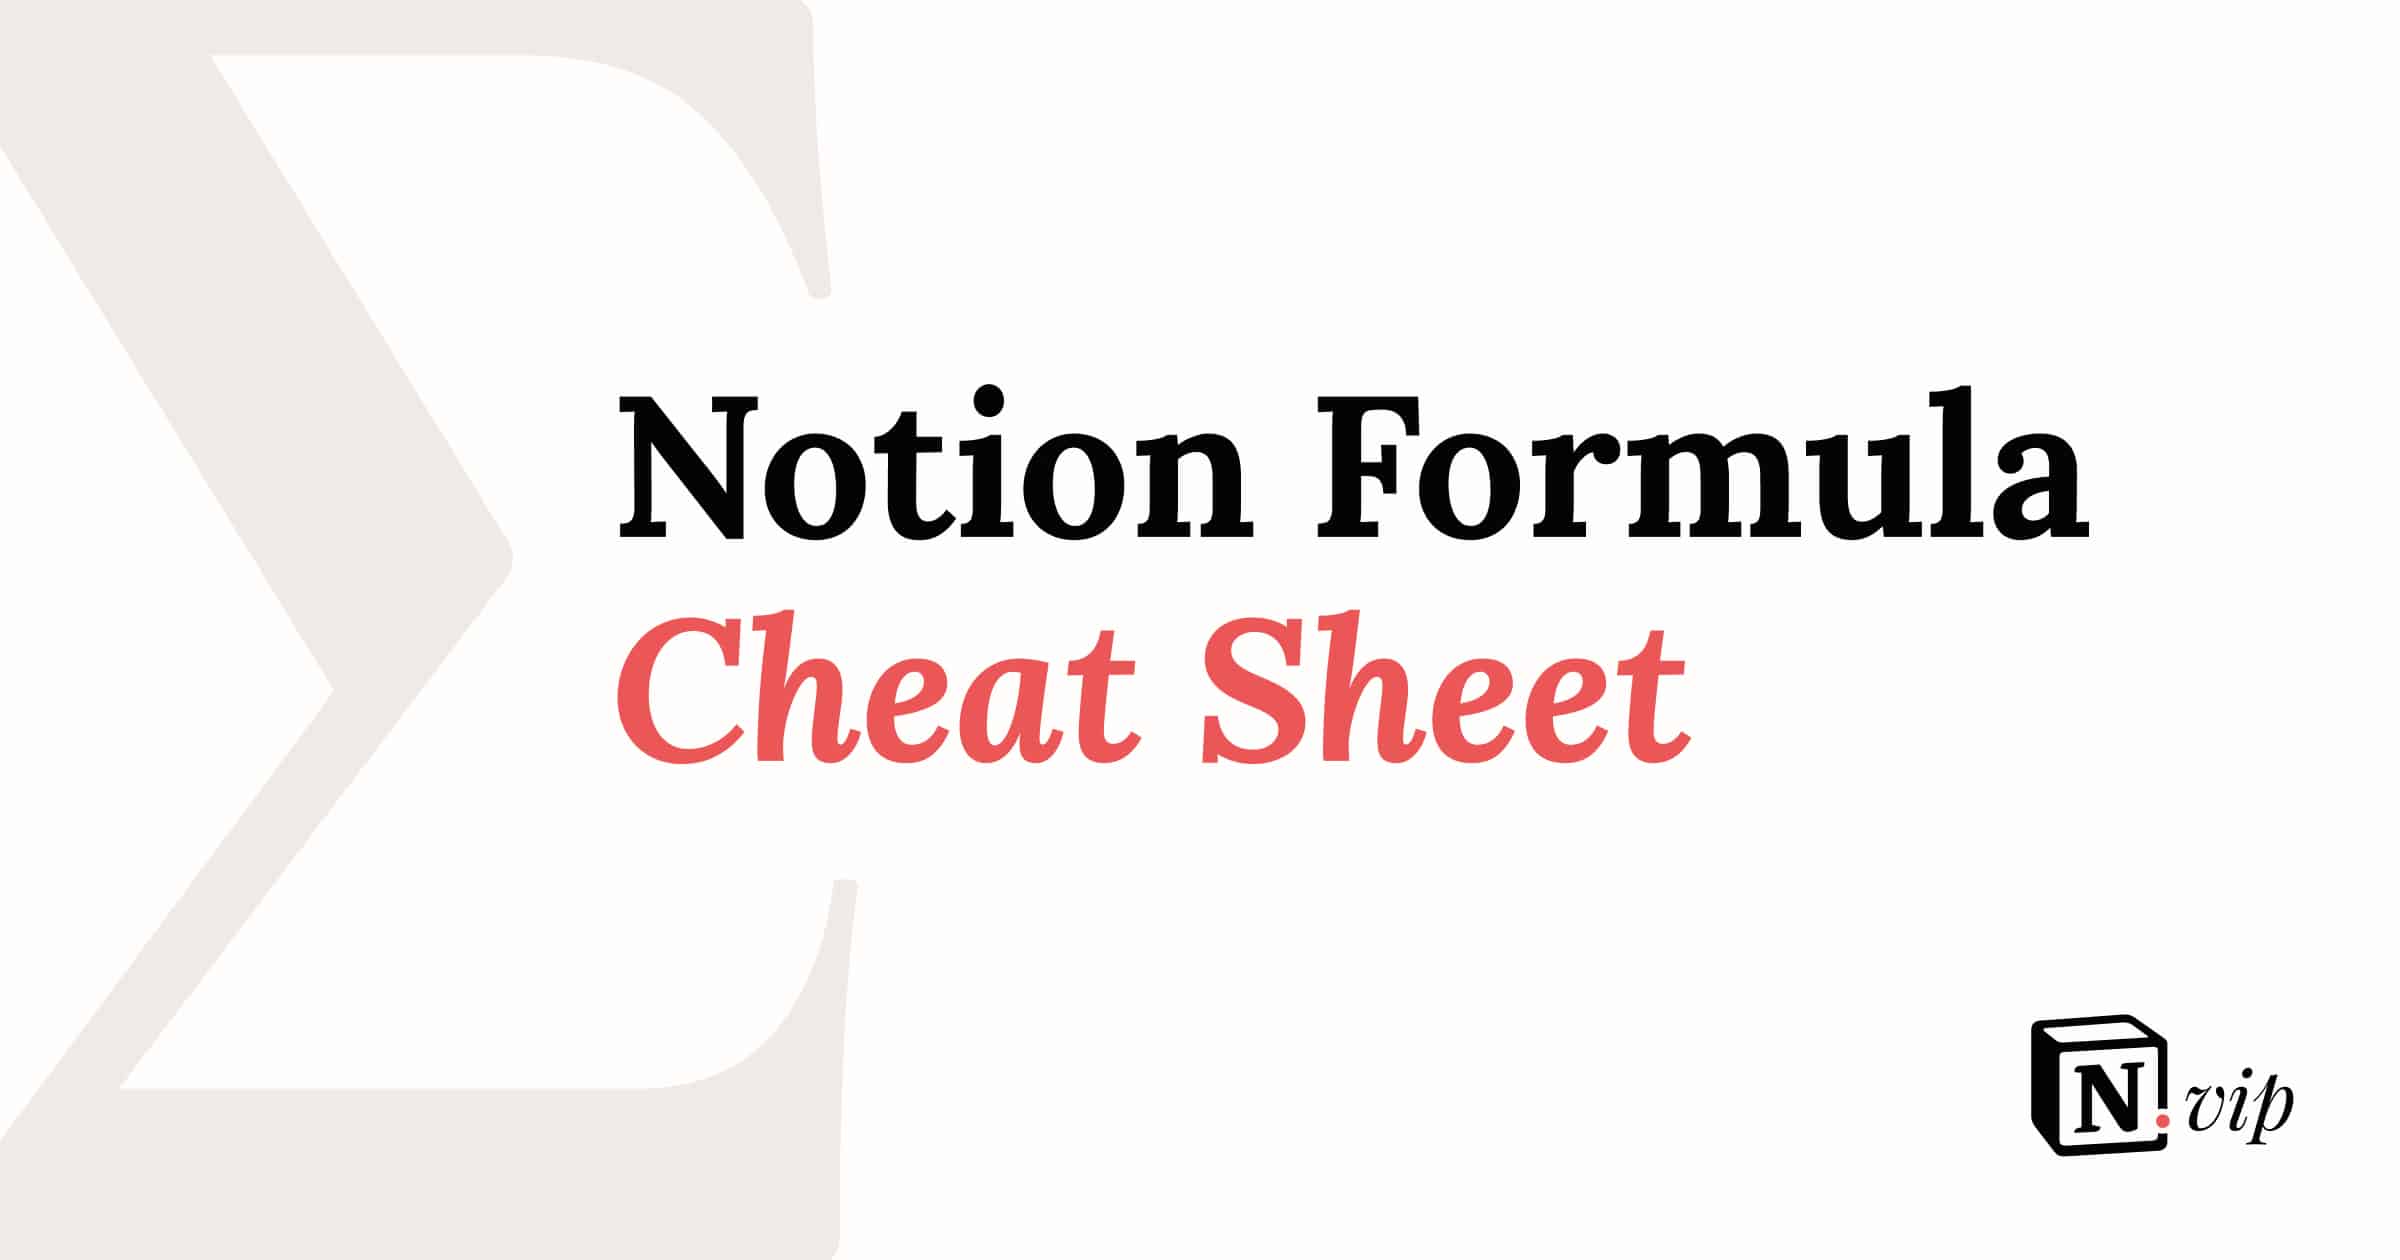 Notion Formula Cheat Sheet